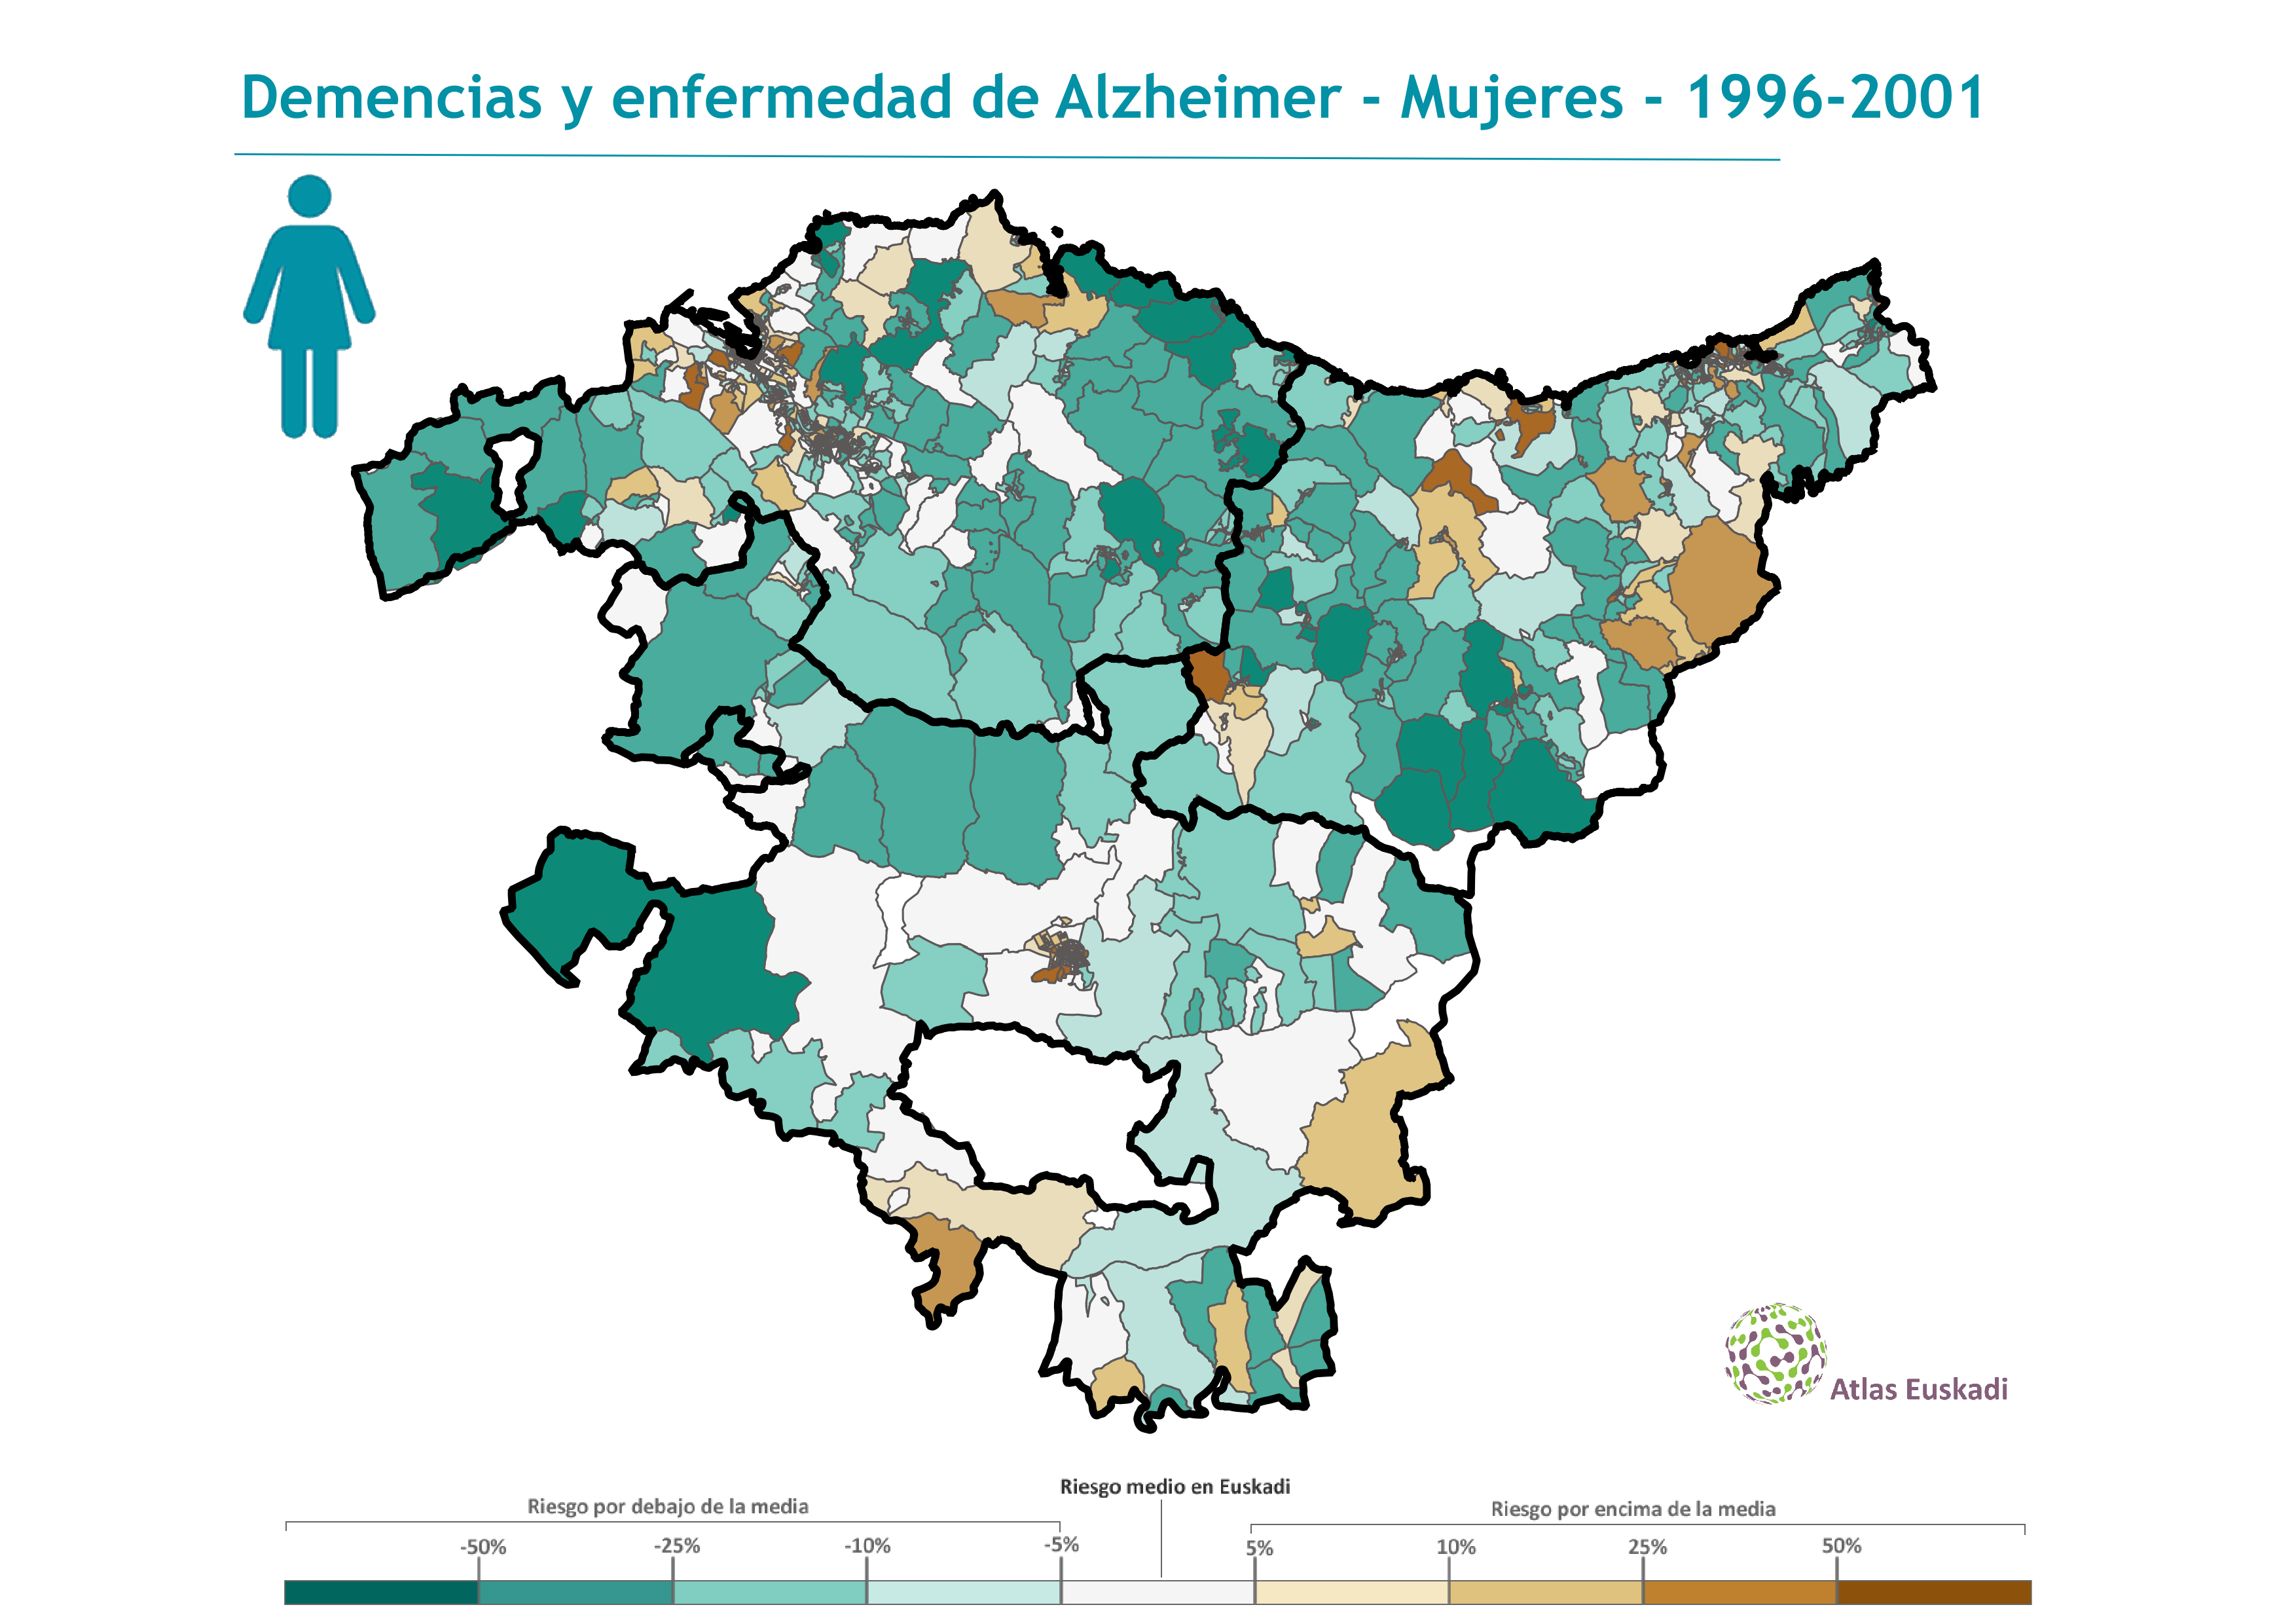 Demencias y enfermedad de Alzheimer mujeres  1996-2001 Euskadi